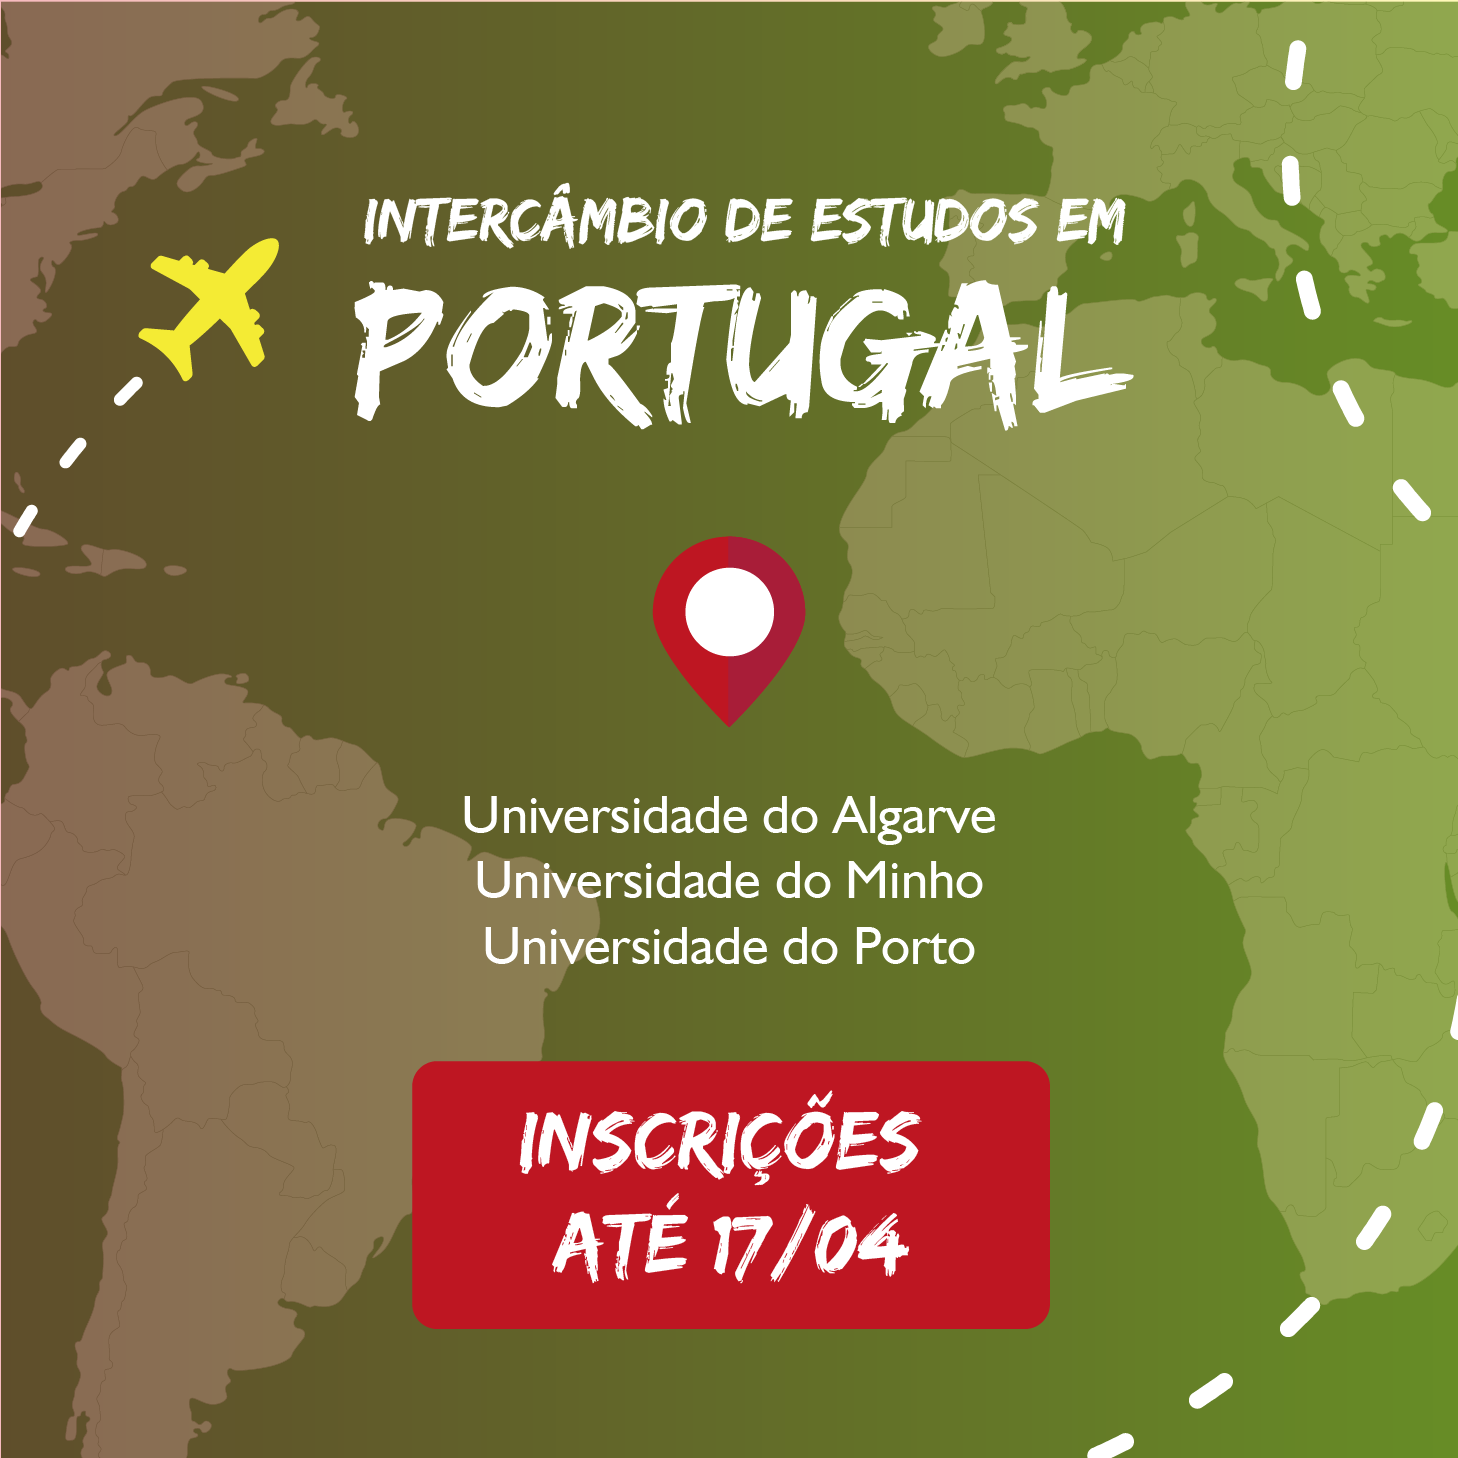 Inscrições abertas para intercâmbio em Portugal